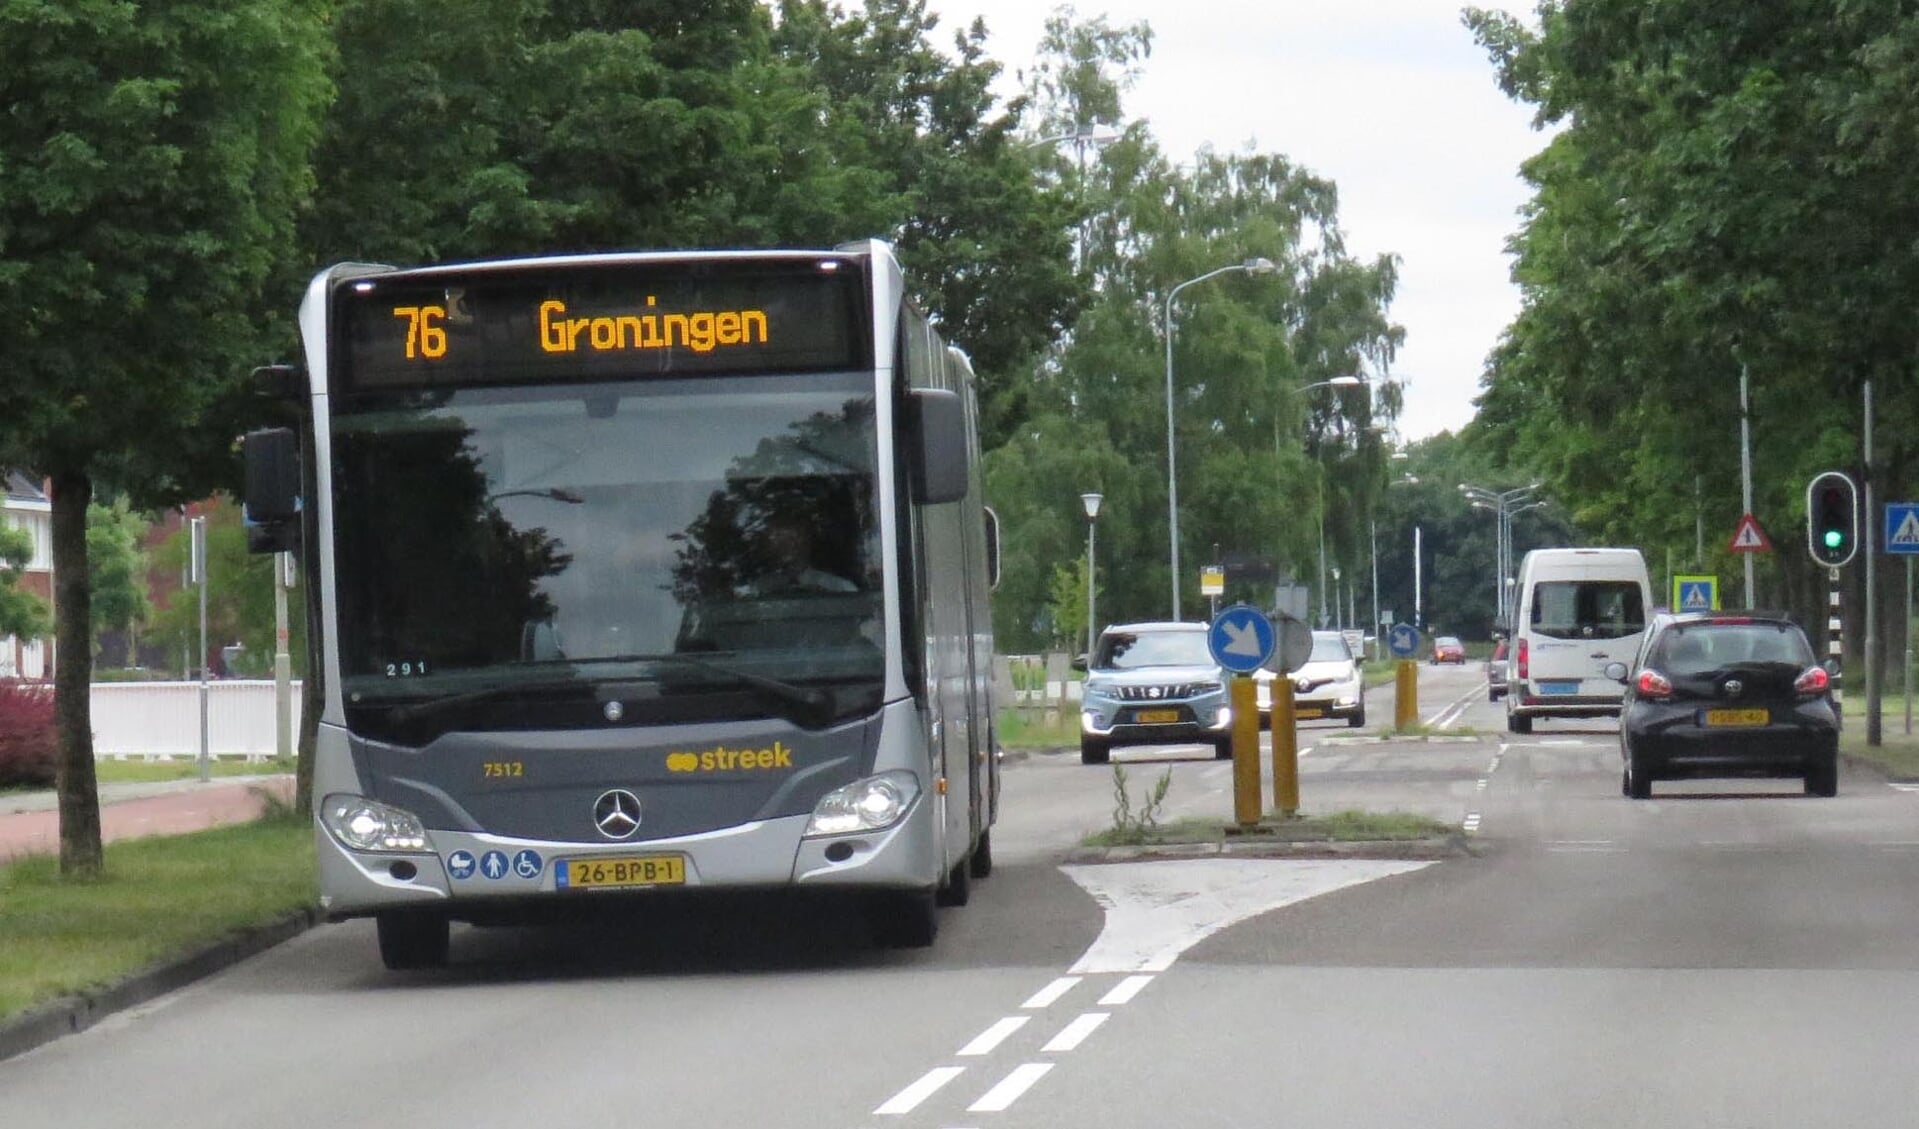 Buslijn 76 van Hoogezand naar Groningen, die het OV Bureau wil samenvoegen met lijn 71.